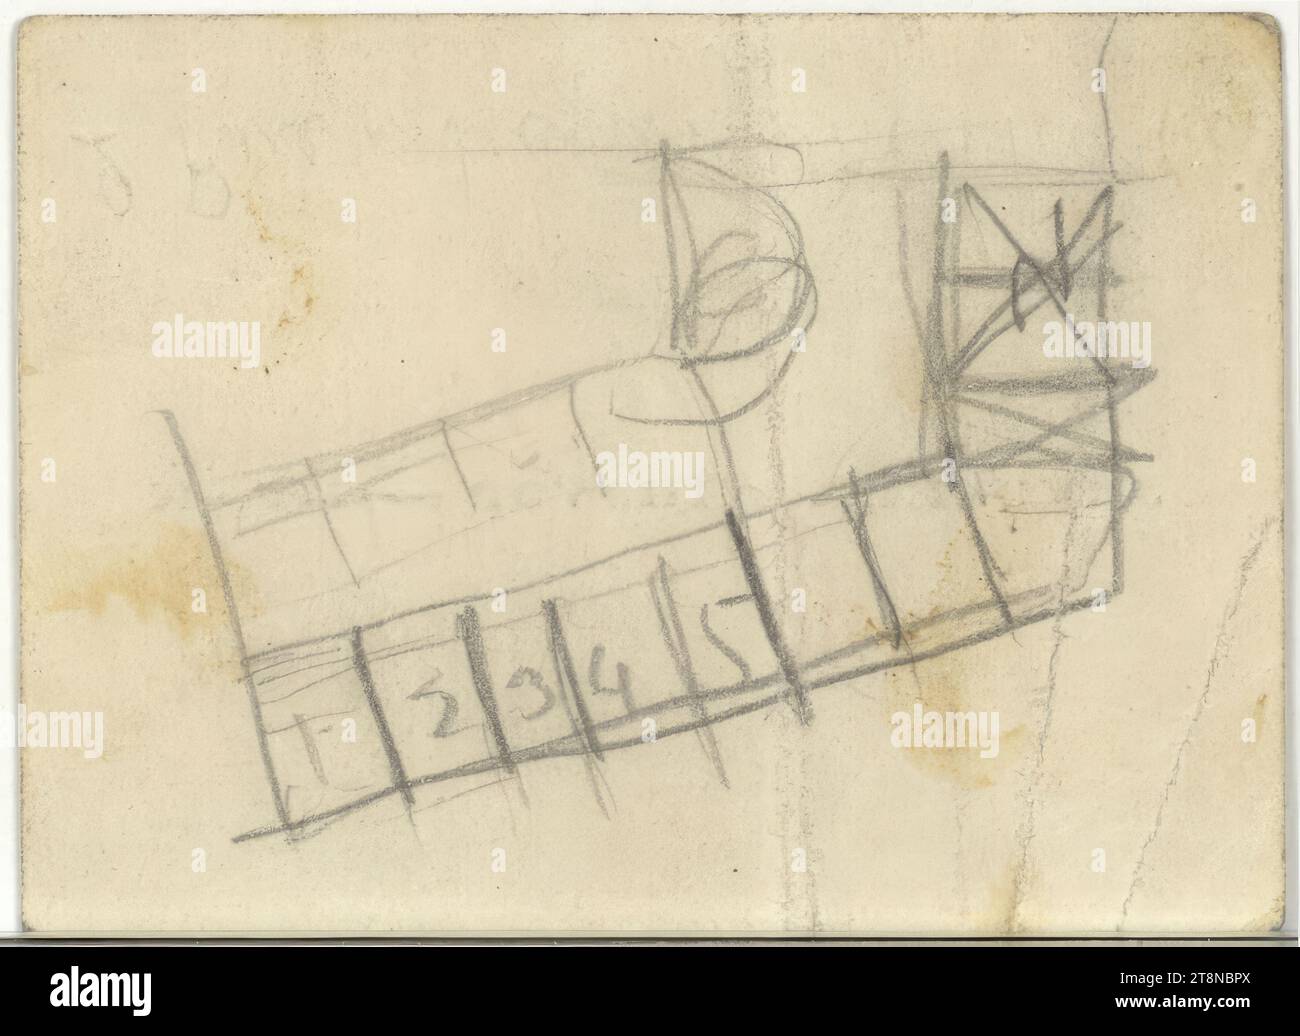 Immeuble, carte de visite Plan d'étage, dessin architectural, papier ; crayon, 61x84mm Banque D'Images